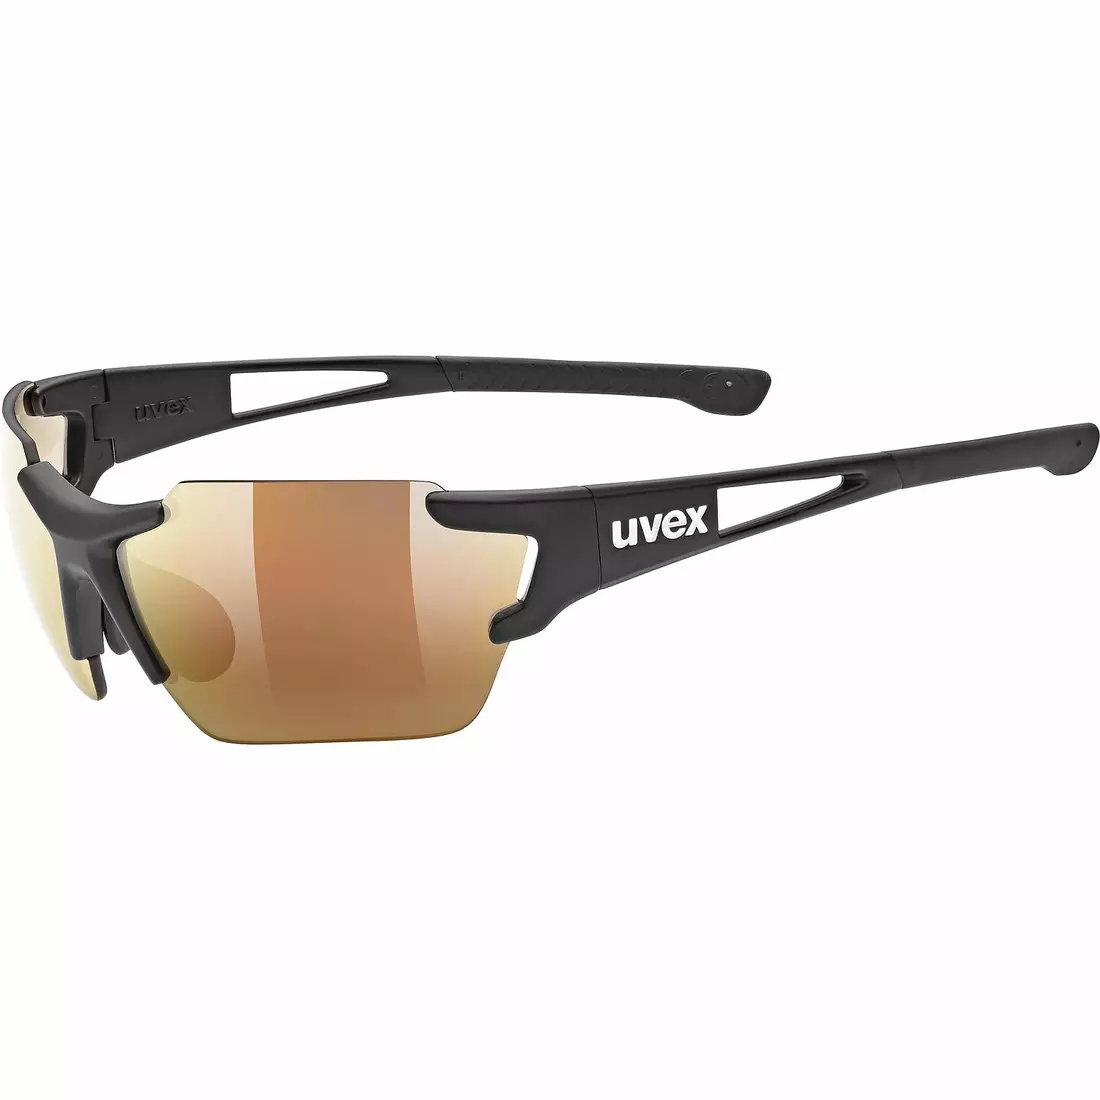 UVEX ochelari fotocromici Sportstyle 803 r cv vm small black mat